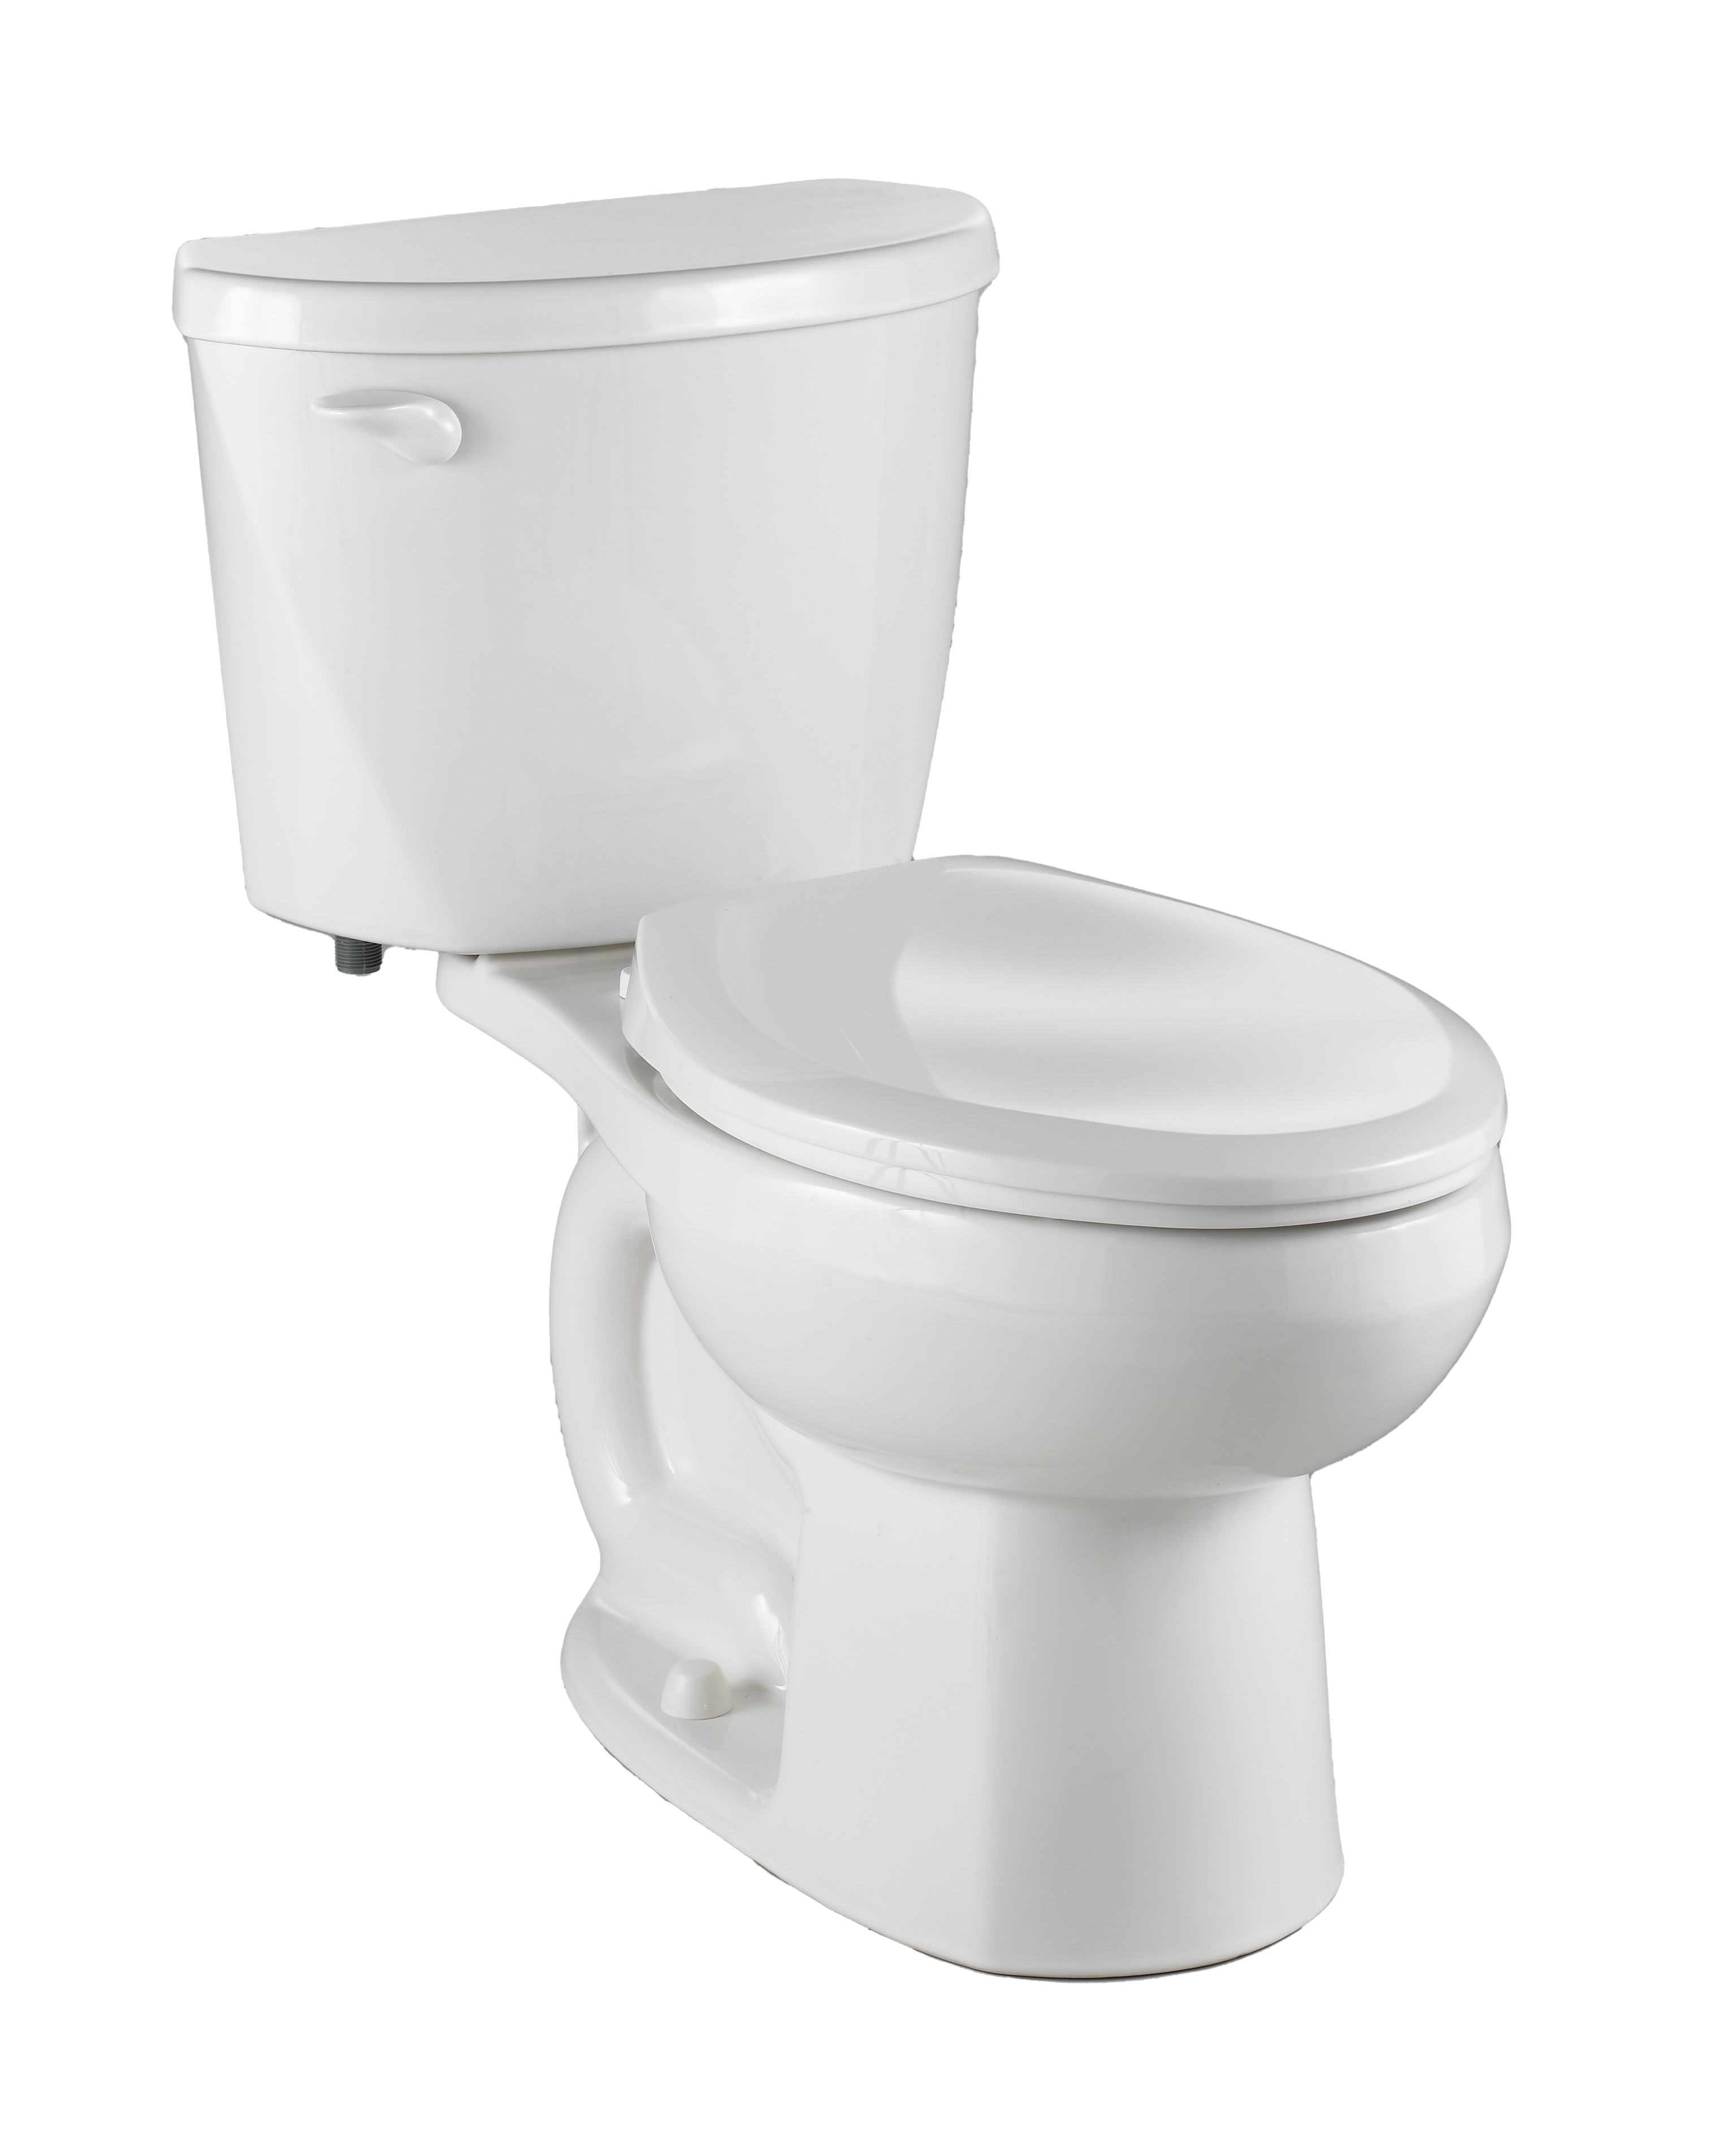 Toilette Evolution 2, 2 pièces, 1,28 gpc/4,8 lpc, à cuvette allongée à hauteur de chaise et réservoir avec doublure, sans siège